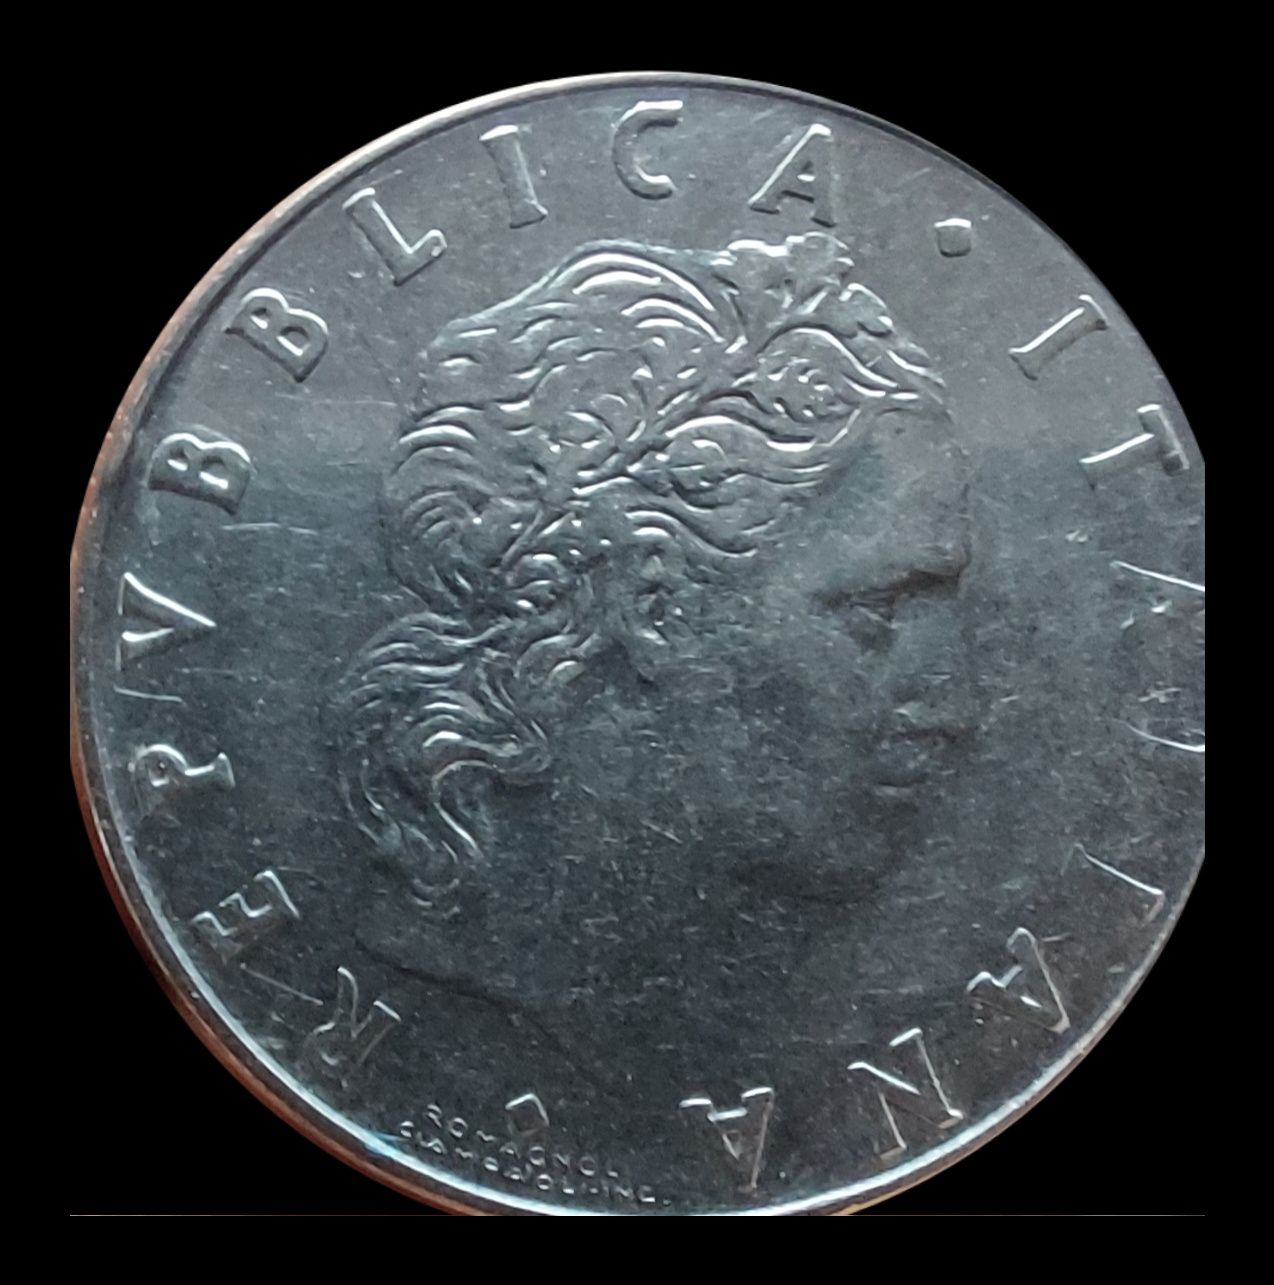 Se vând 4 monede de 100 de lei din 1943 și una de 25 de bani din 1966